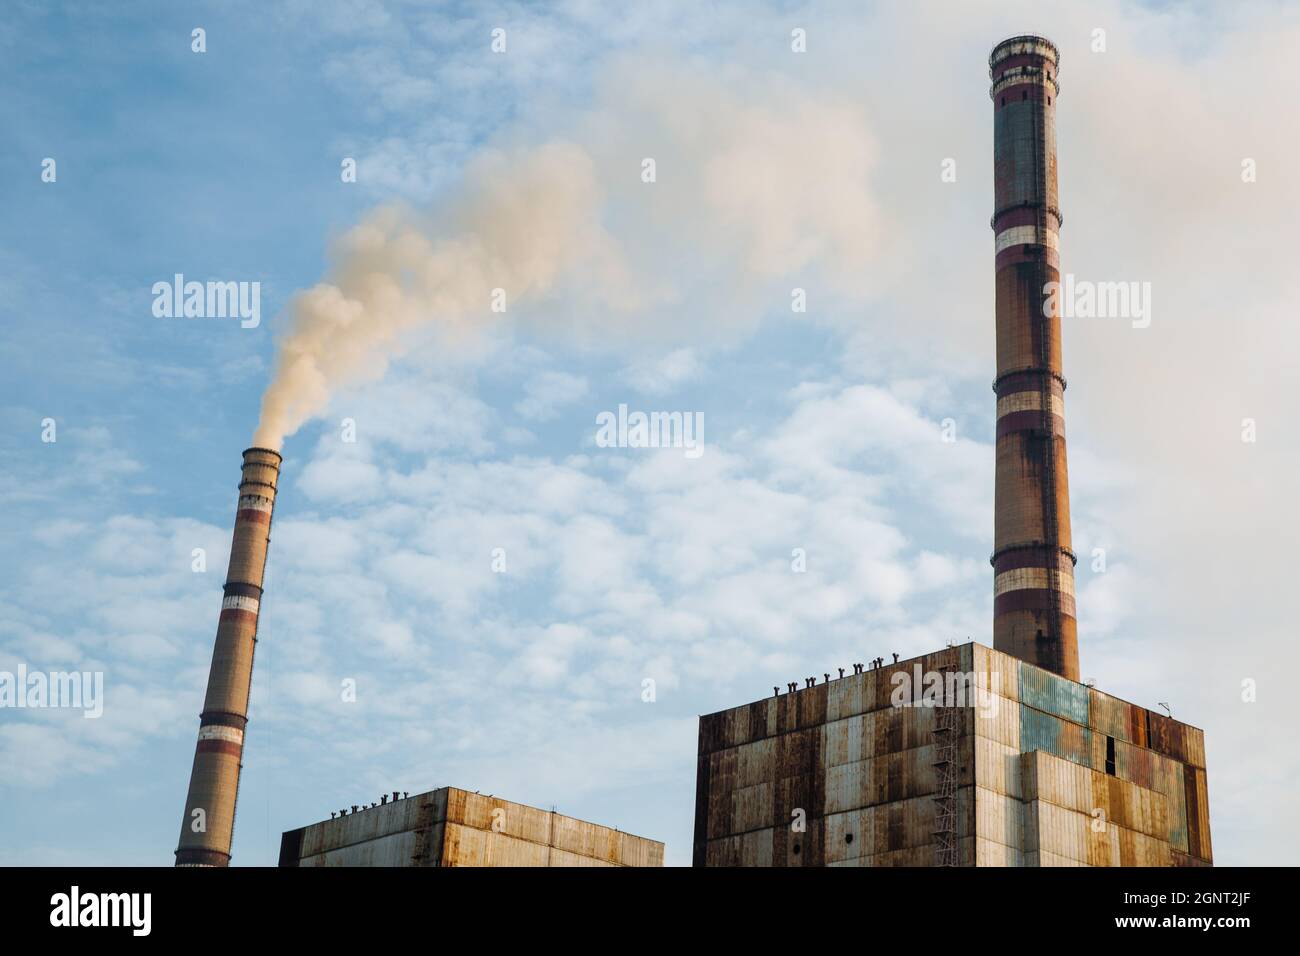 Luftverschmutzung, Werksrohre, Rauch aus Kaminen auf dem Hintergrund des Himmels. Konzept der Industrie, Ökologie, Dampfanlage, Heizperiode, globale Erwärmung. Umweltproblem Stockfoto